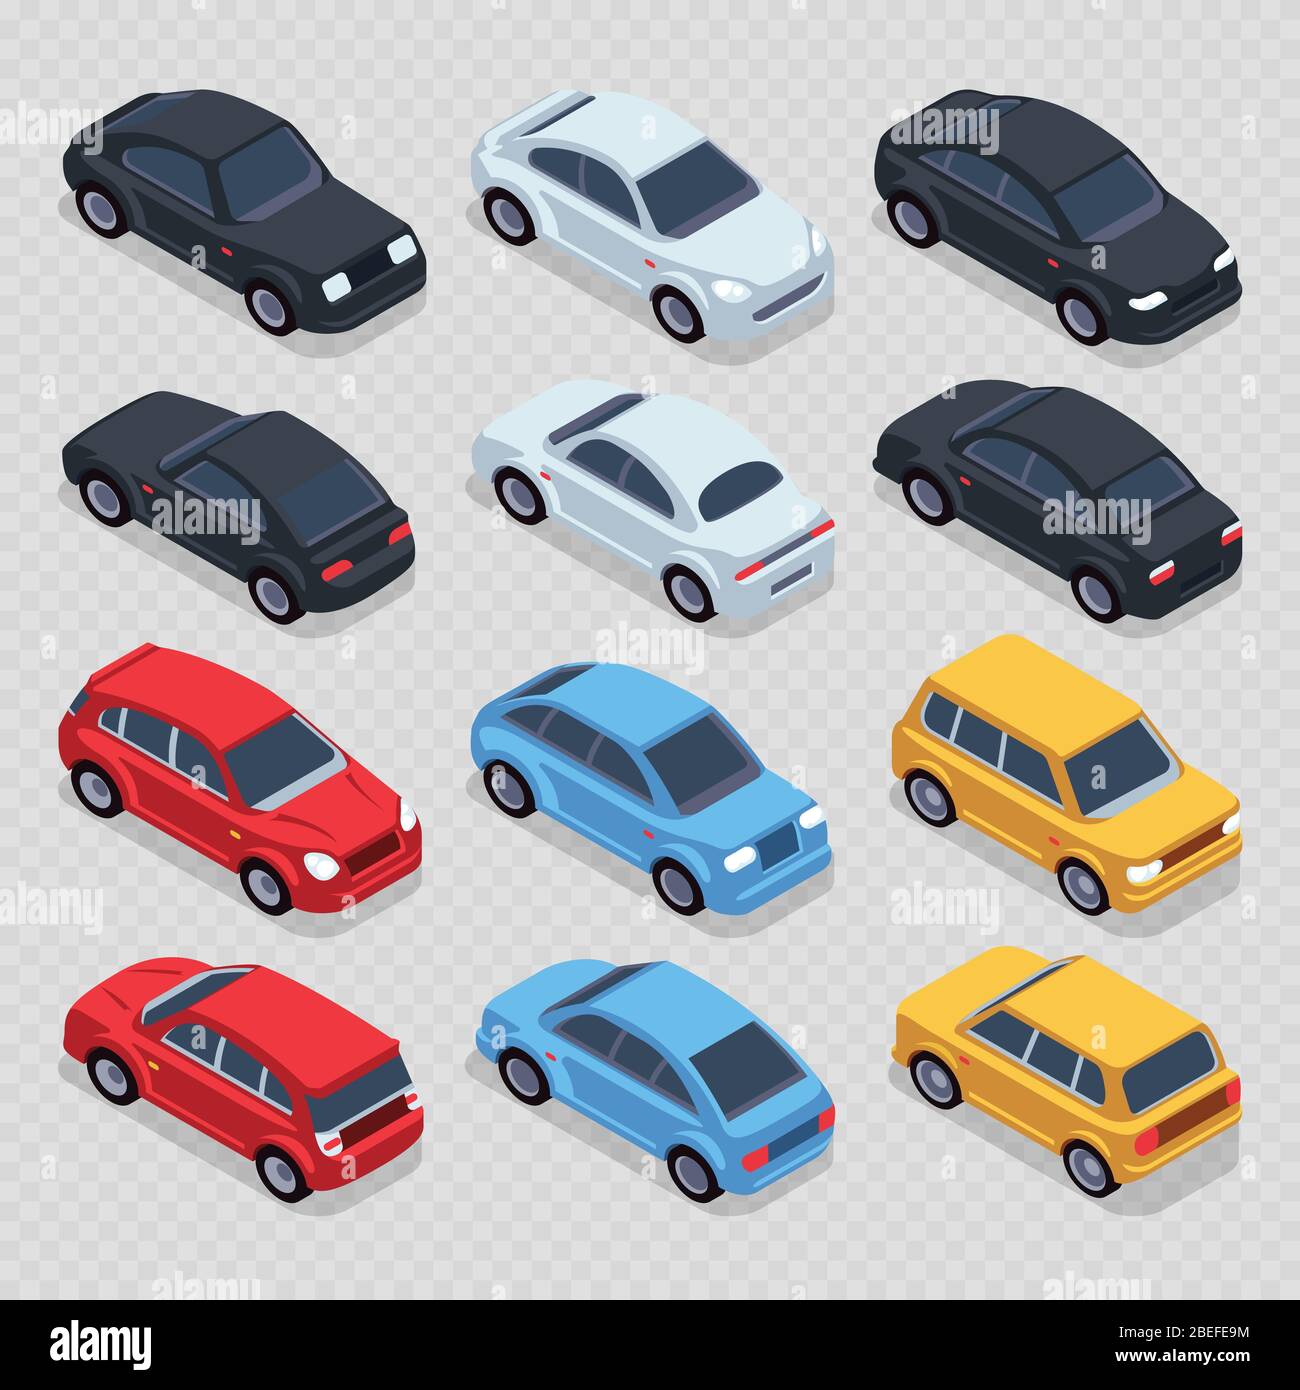 Isometrische 3d-Autos auf transparentem Hintergrund isoliert gesetzt. Set Transport isometrische Automobil, Vektor-Abbildung Stock Vektor